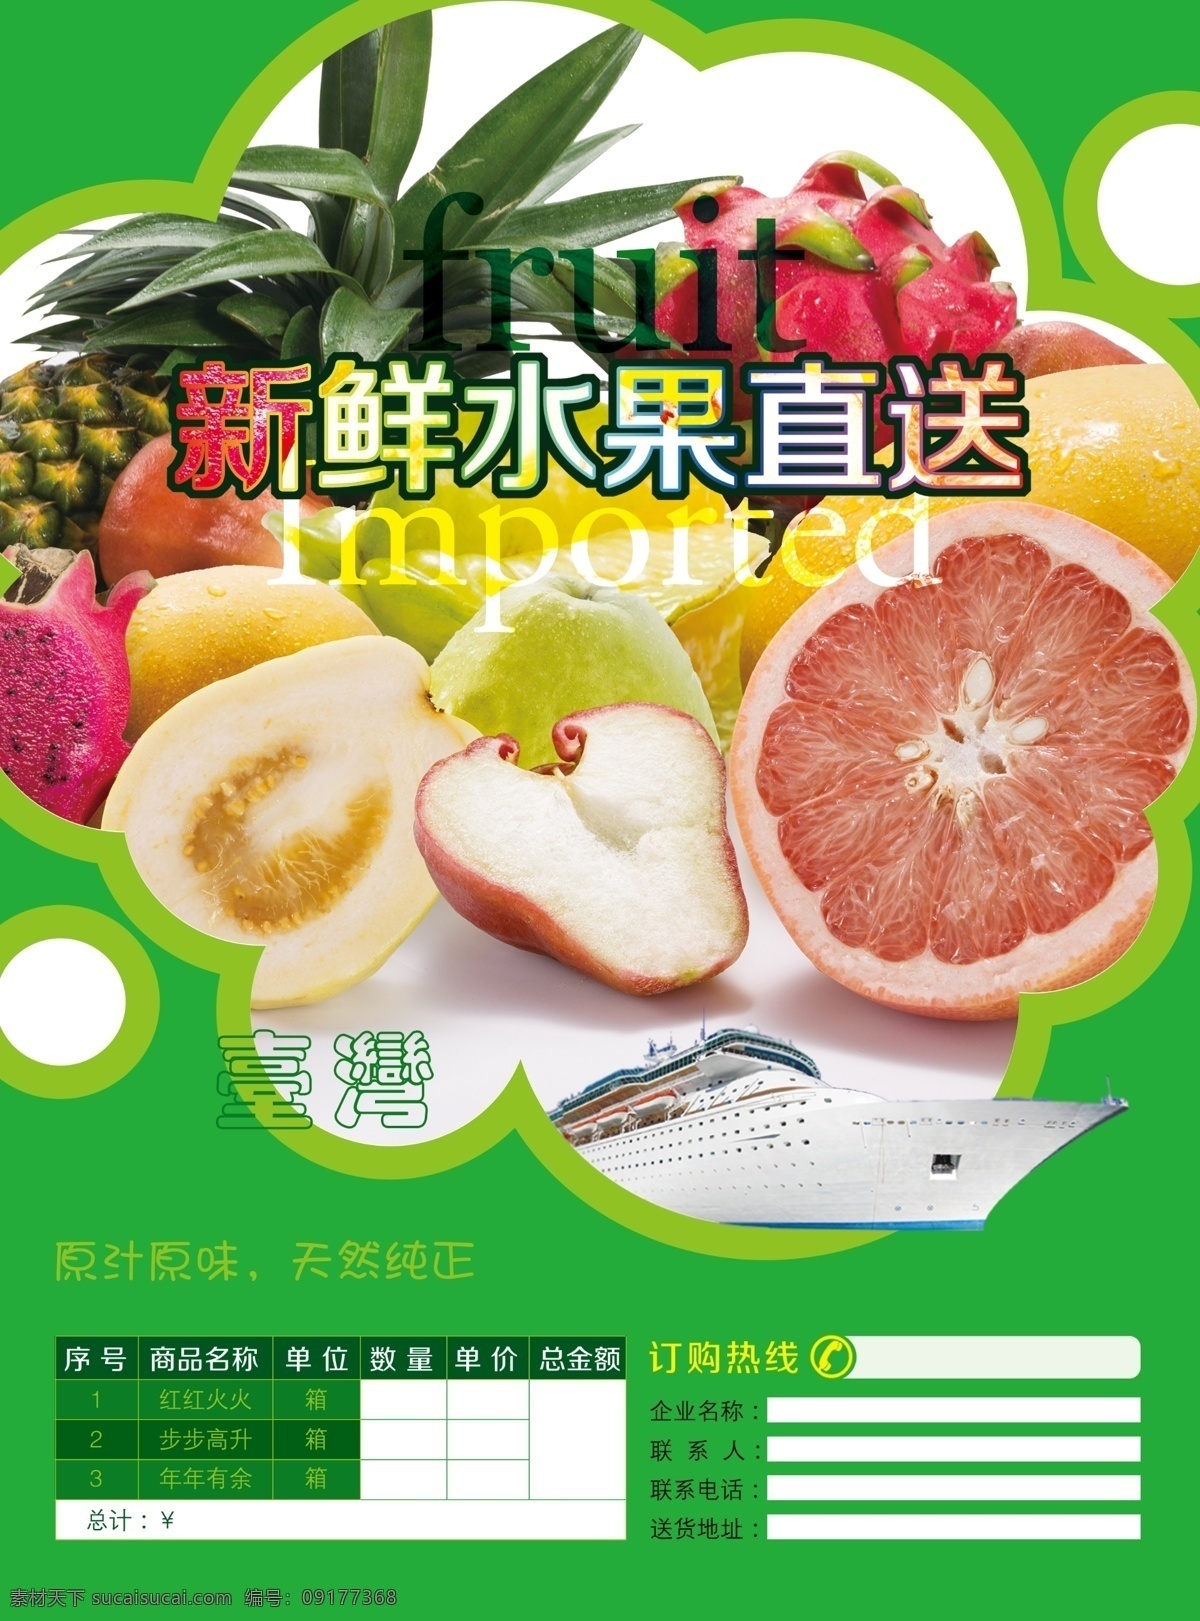 台湾水果传单 台湾水果 水果 水果传单 台湾水果配送 传单 dm宣传单 广告设计模板 源文件